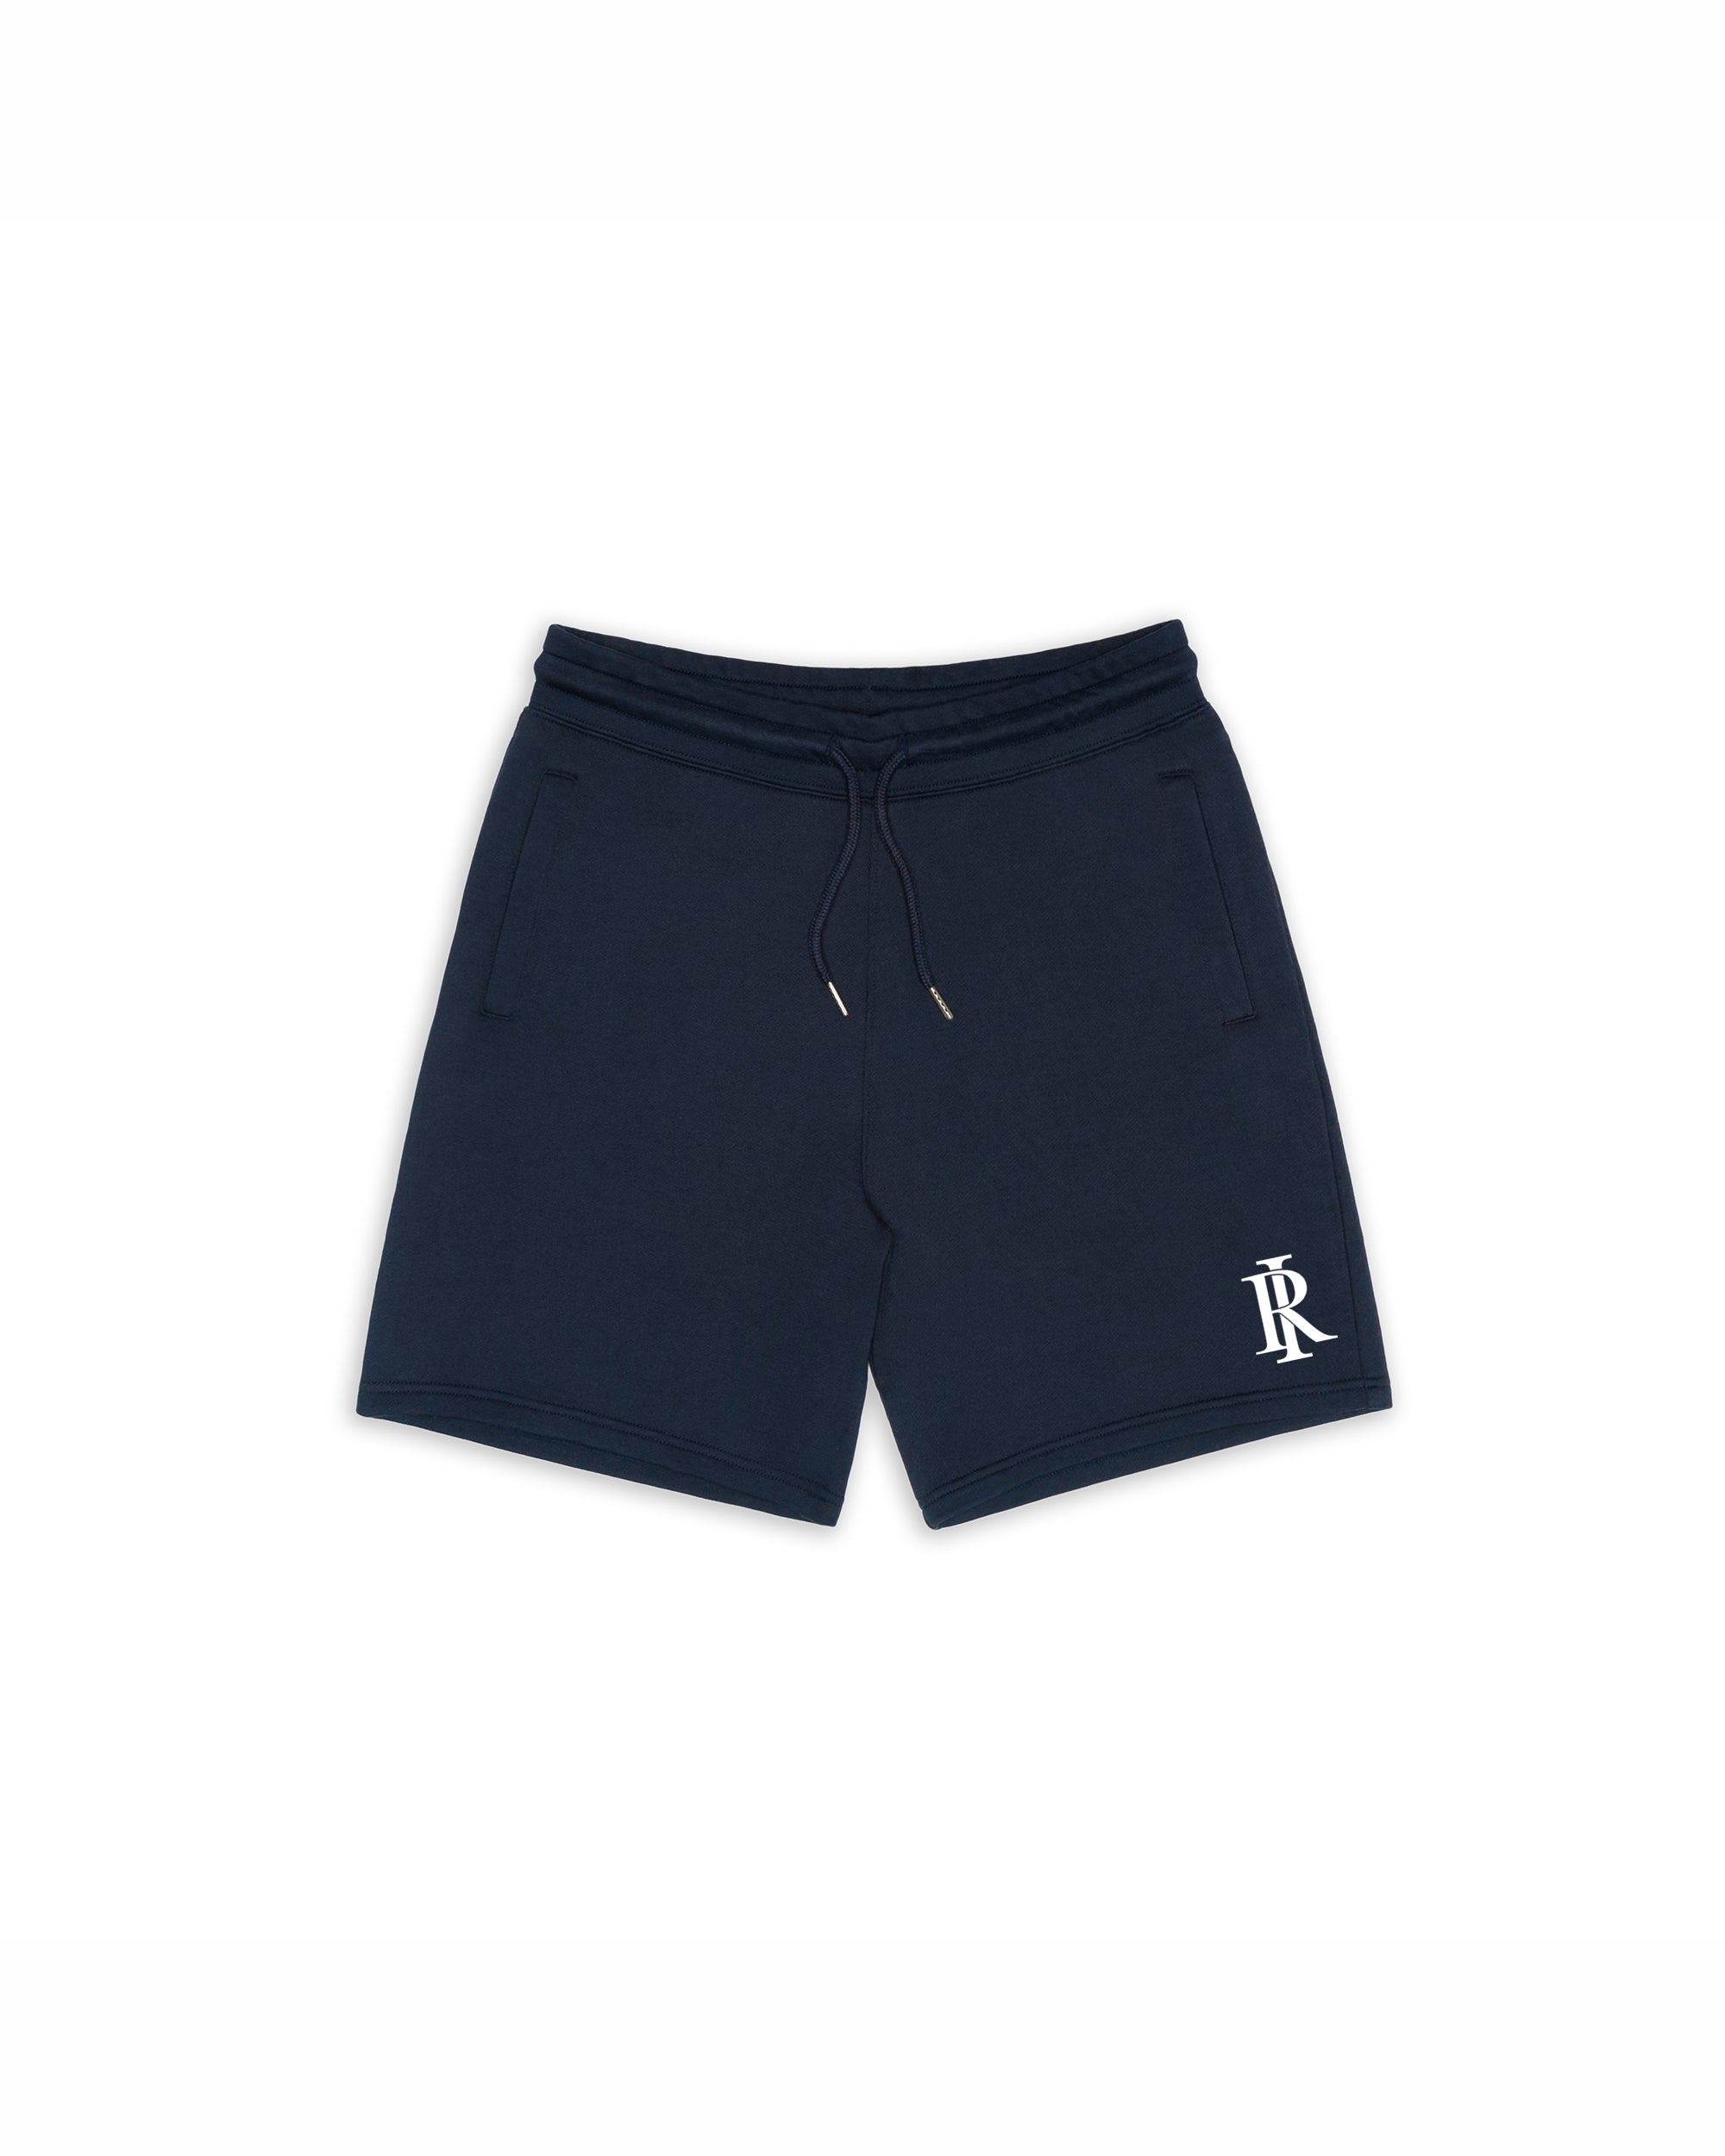 Monogram Shorts - Navy